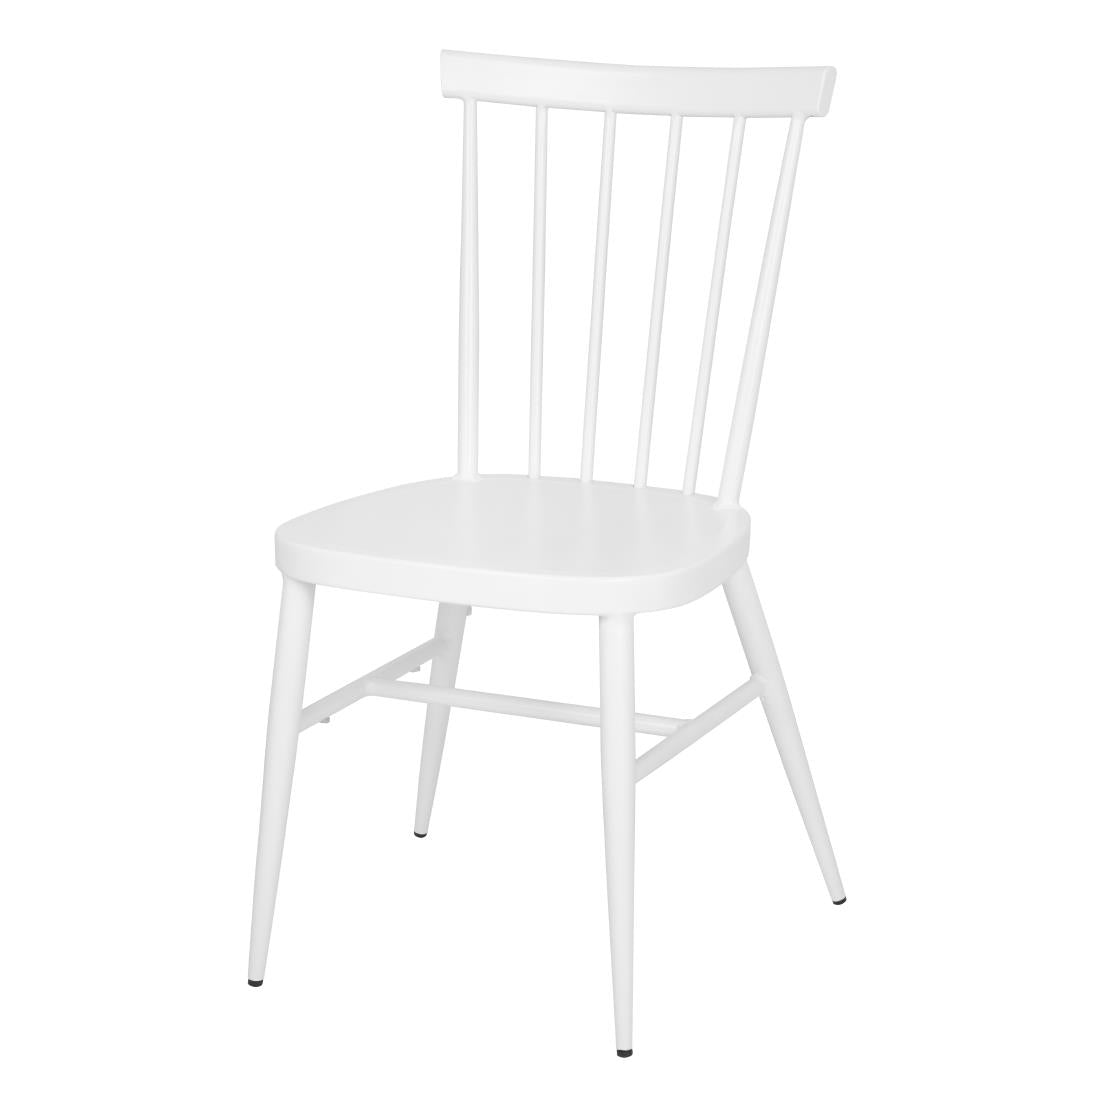 DP718 Bolero Windsor Aluminium White Chairs White (Pack of 4)